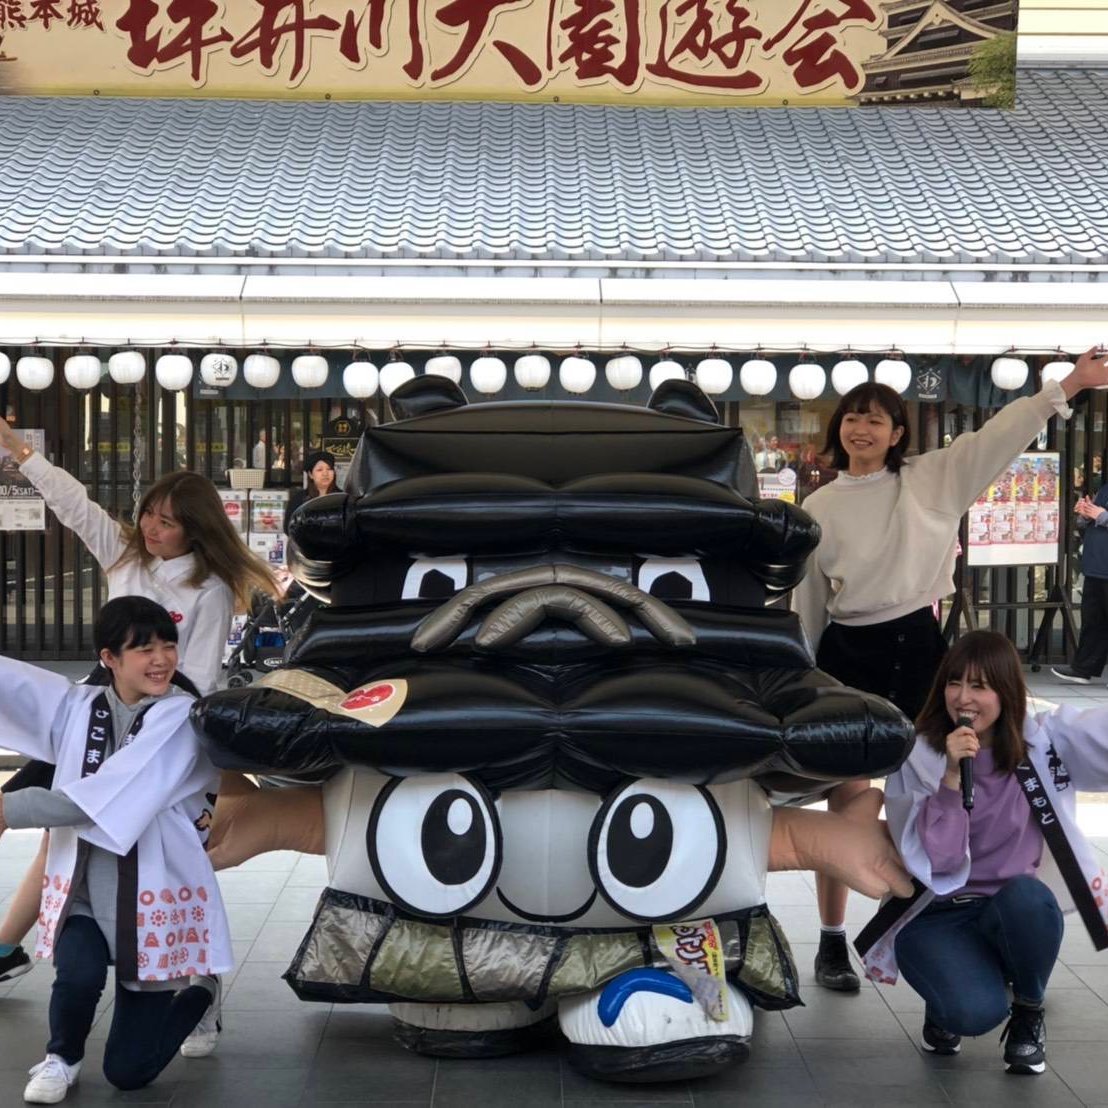 熊本市イメージキャラクター 兼 熊本城復興本部長「ひごまる」。平成26年10月にひごまる隊を結成。復興のシンボルとして熊本から元気と笑顔をお届けするまる〜！